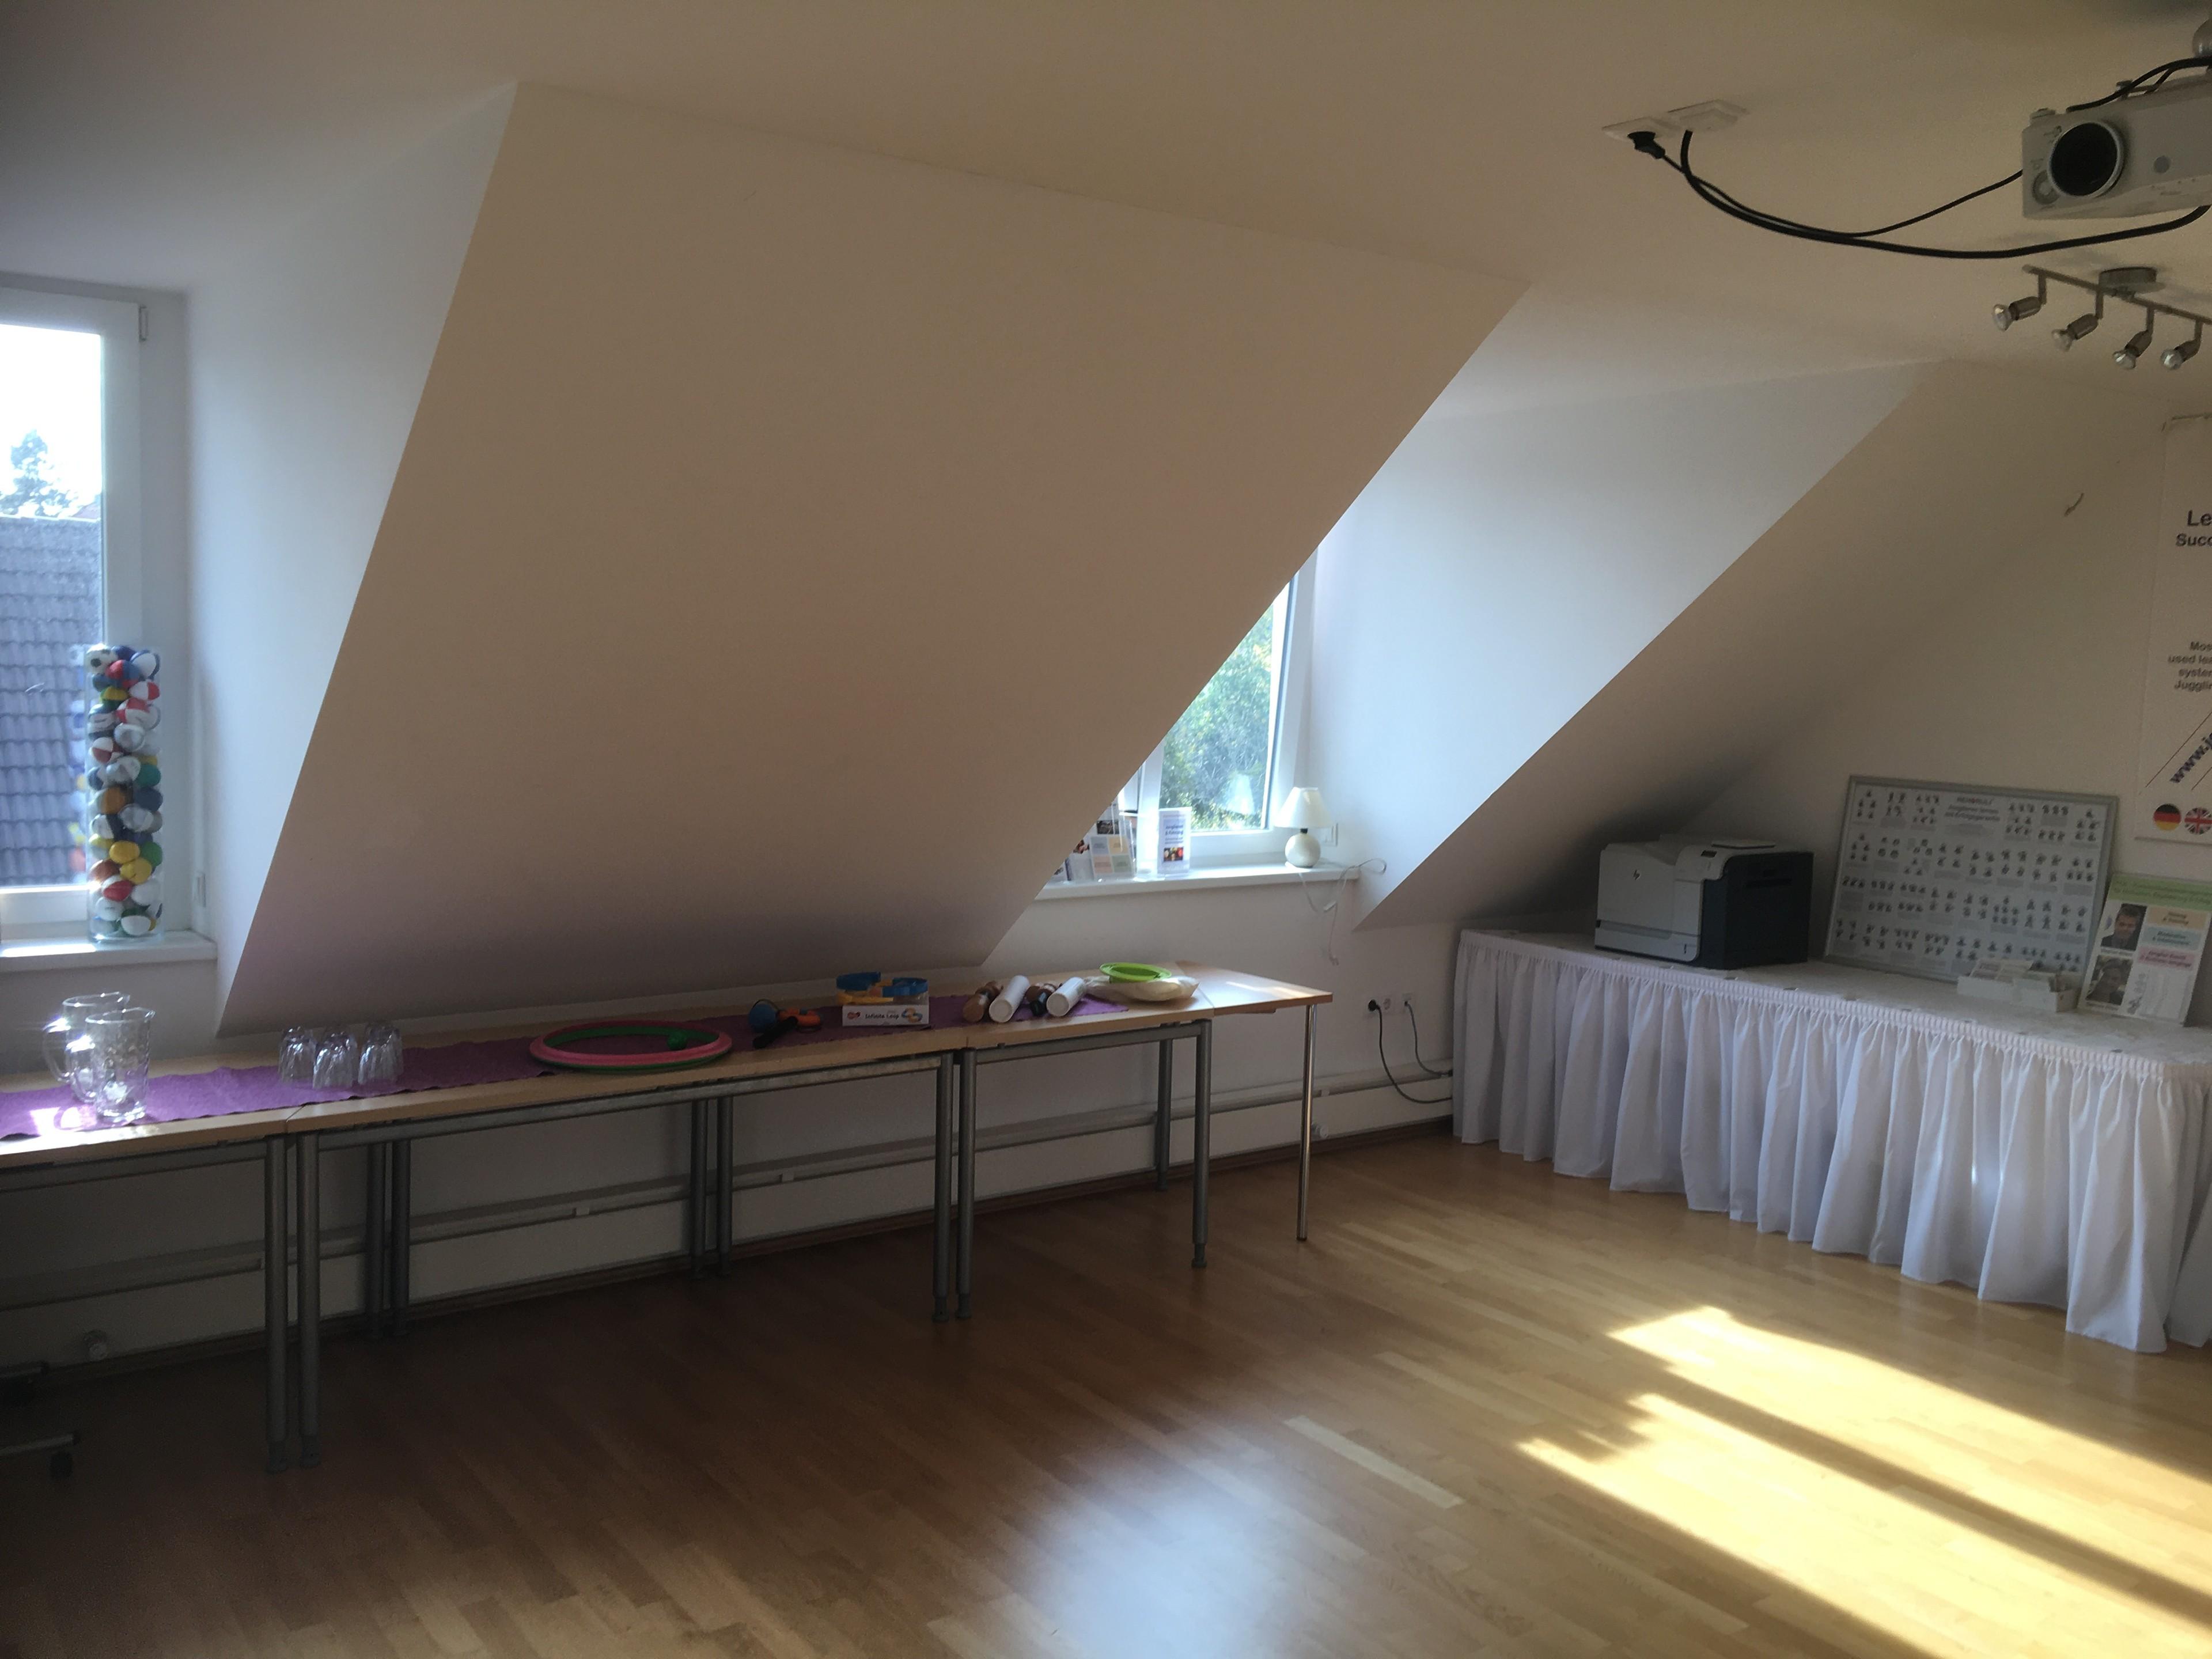 Ein Raum mit Dachschrägen, in dem Kurse der Jonglierschule München stattfinden